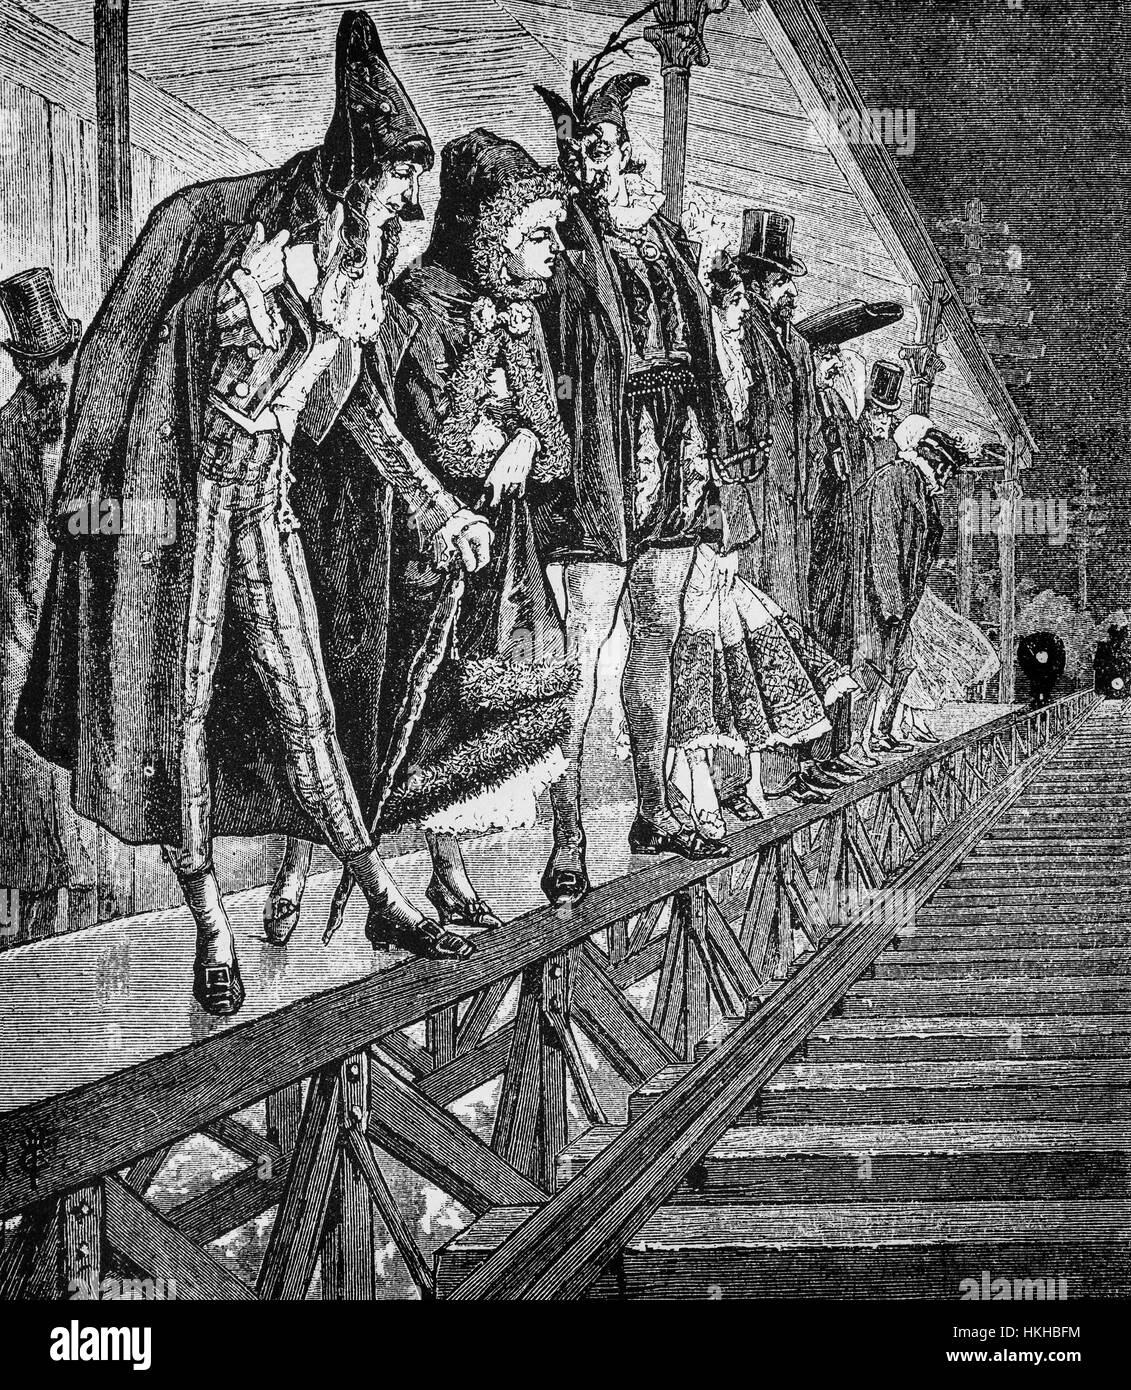 1879: Partygänger auf einer Plattform von der Hochbahn, auf dem Weg zu einem Masquarade Ball, New York City, Vereinigte Staaten von Amerika Stockfoto